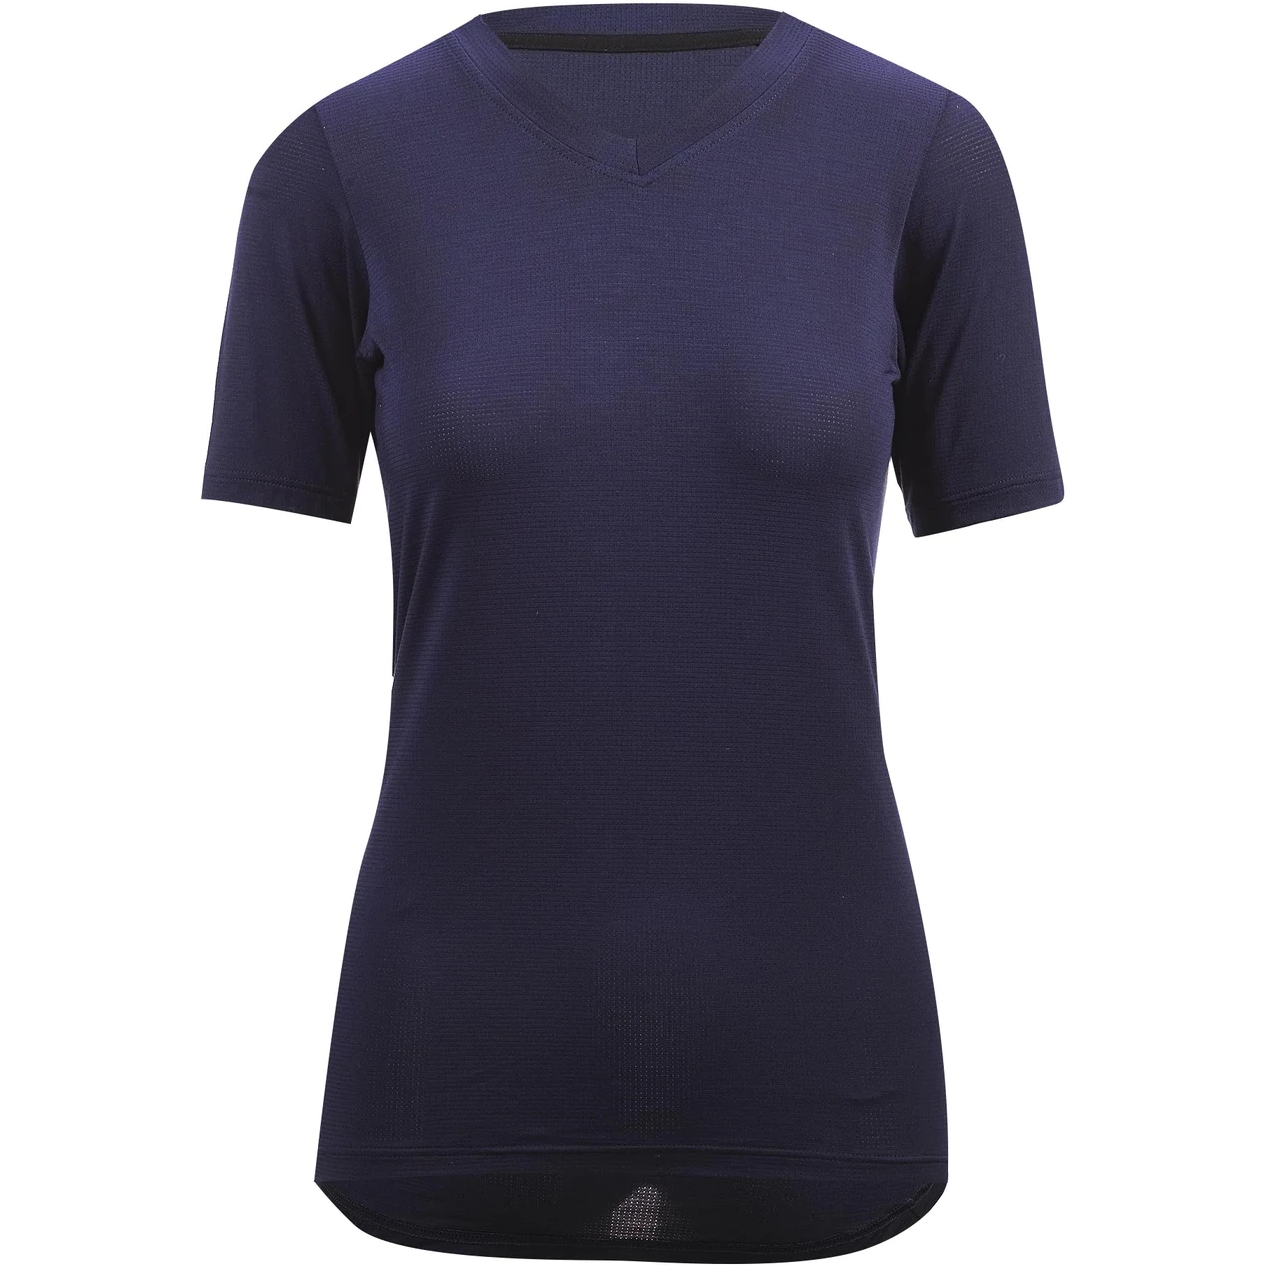 Produktbild von Velocio Micromodal Trail Damen T-Shirt - Navy